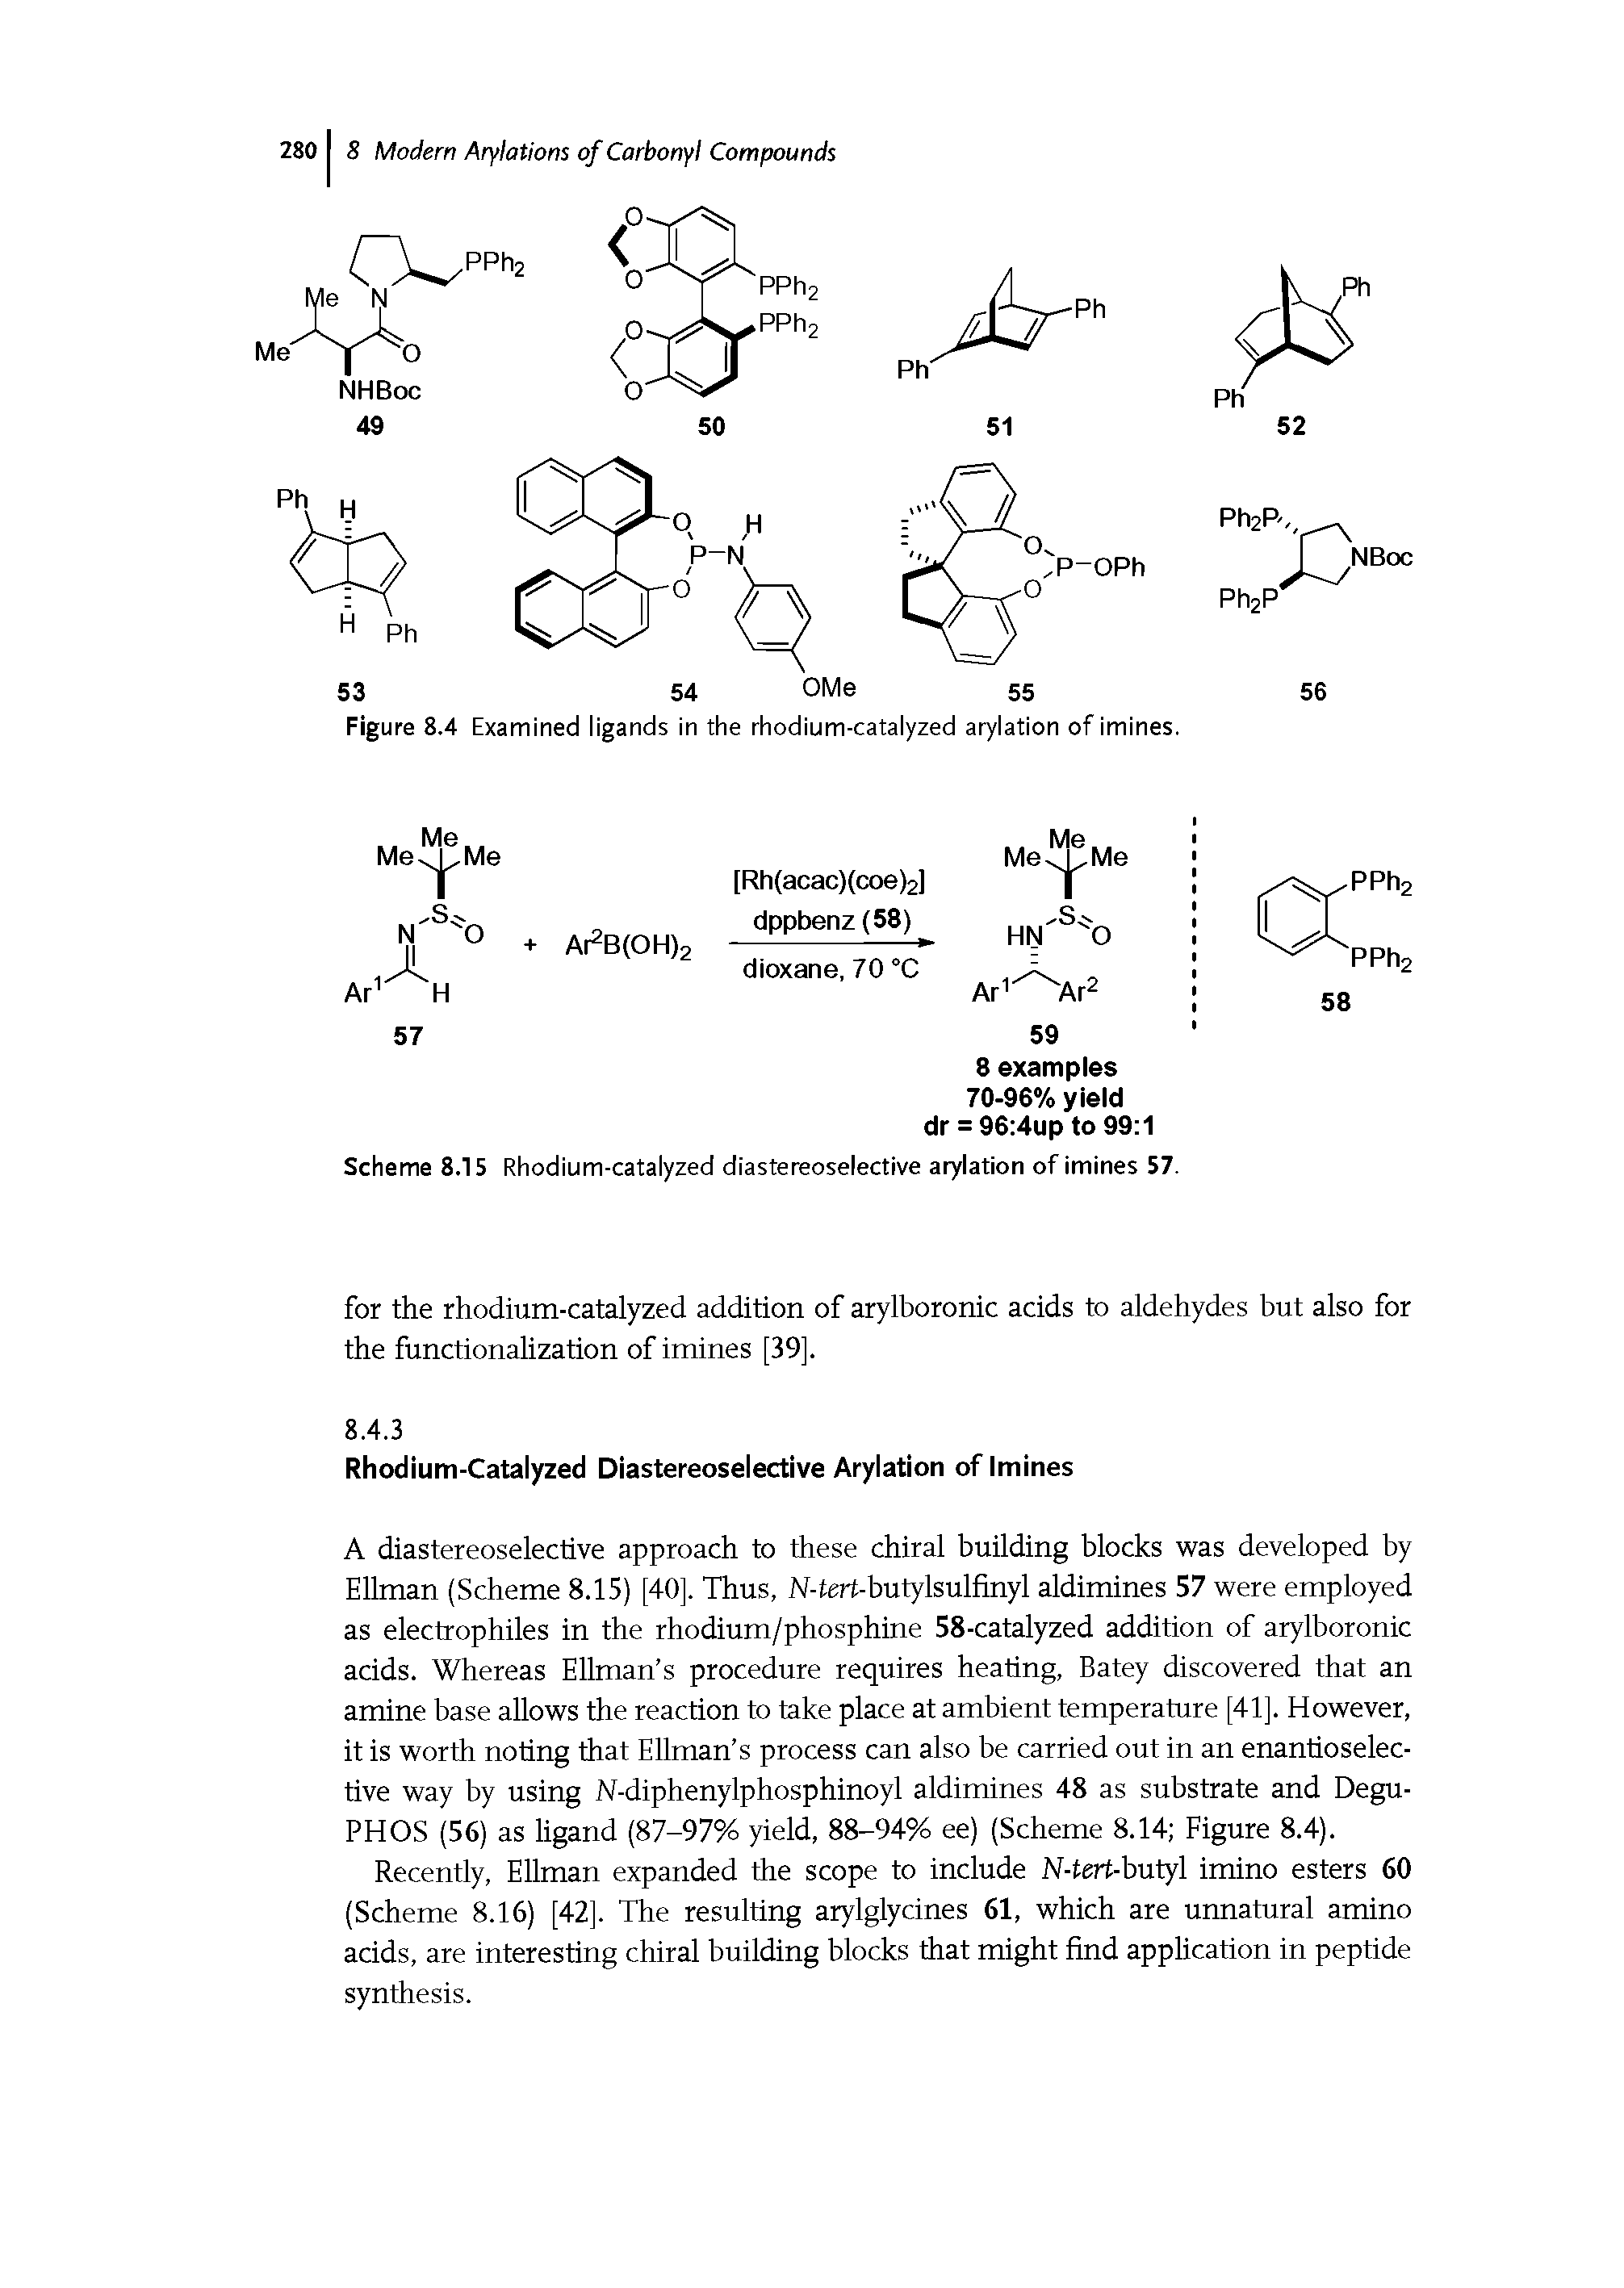 Scheme 8.15 Rhodium-catalyzed diastereoselective arylation of imines 57.